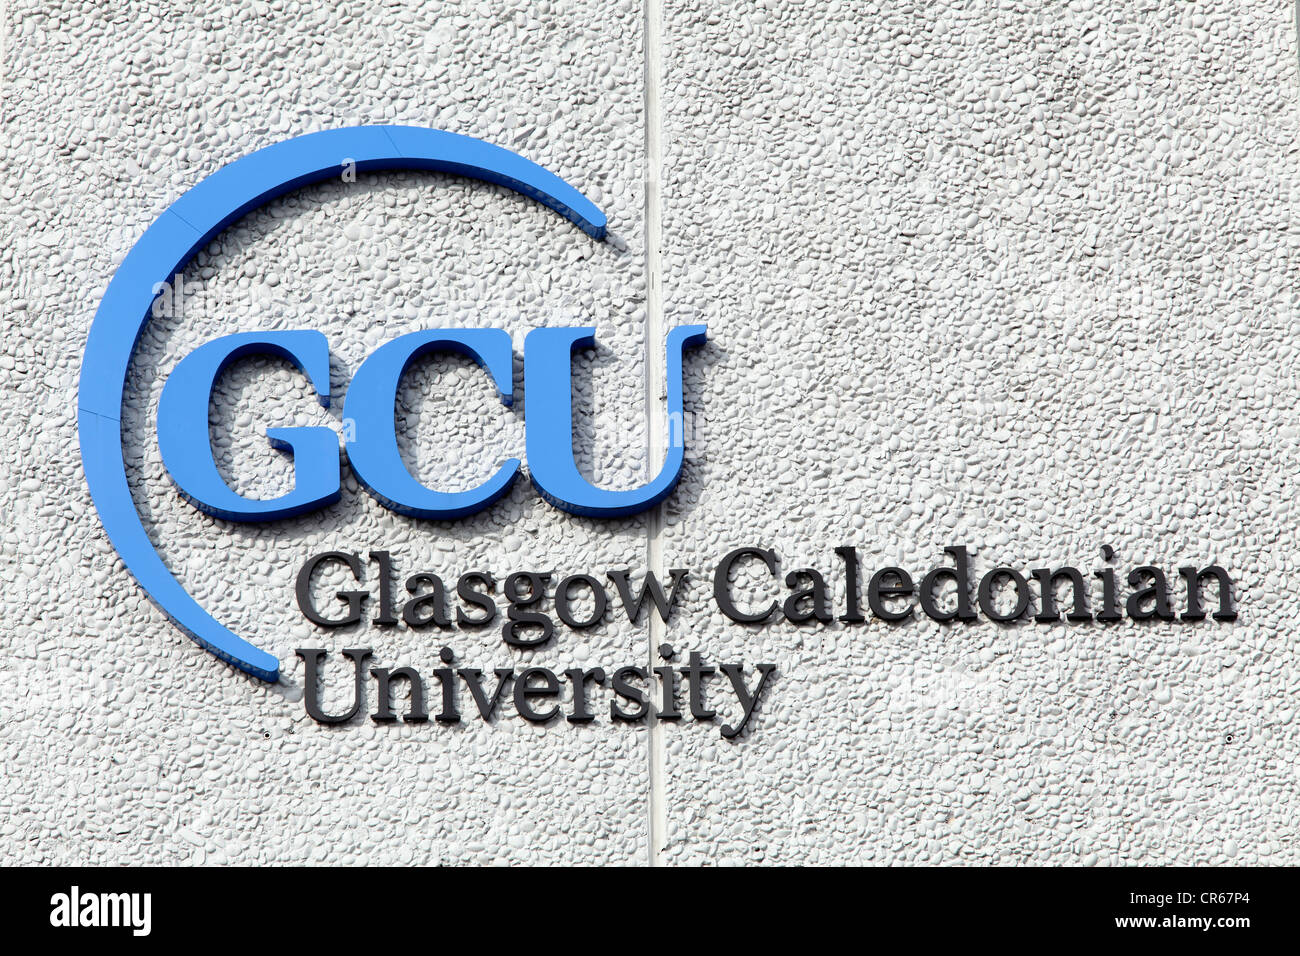 Glasgow Caledonian University sign, Scotland, UK Stock Photo